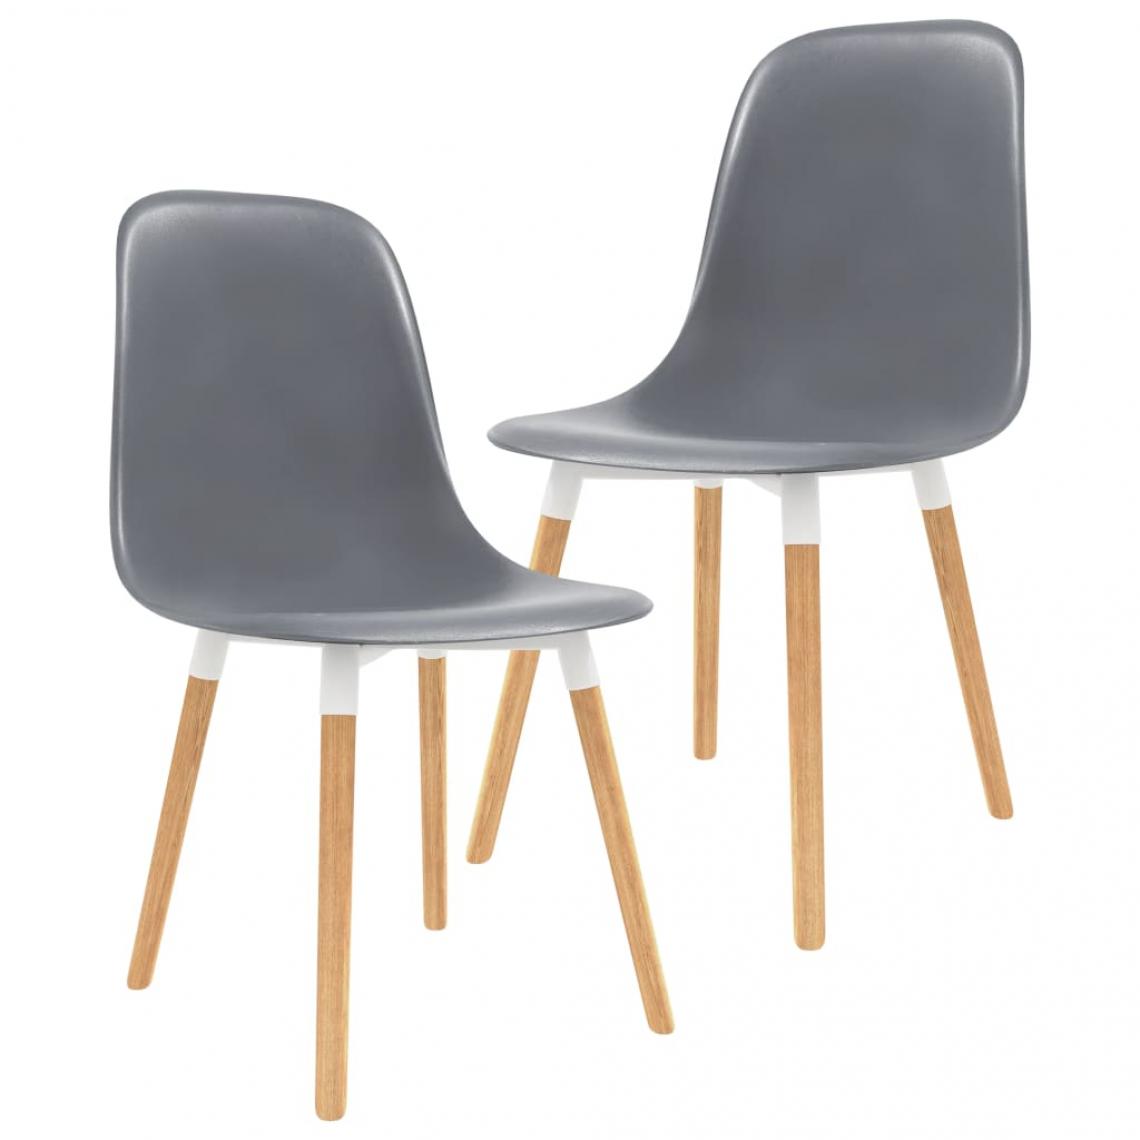 Decoshop26 - Lot de 2 chaises de salle à manger cuisine design moderne plastique gris CDS020567 - Chaises